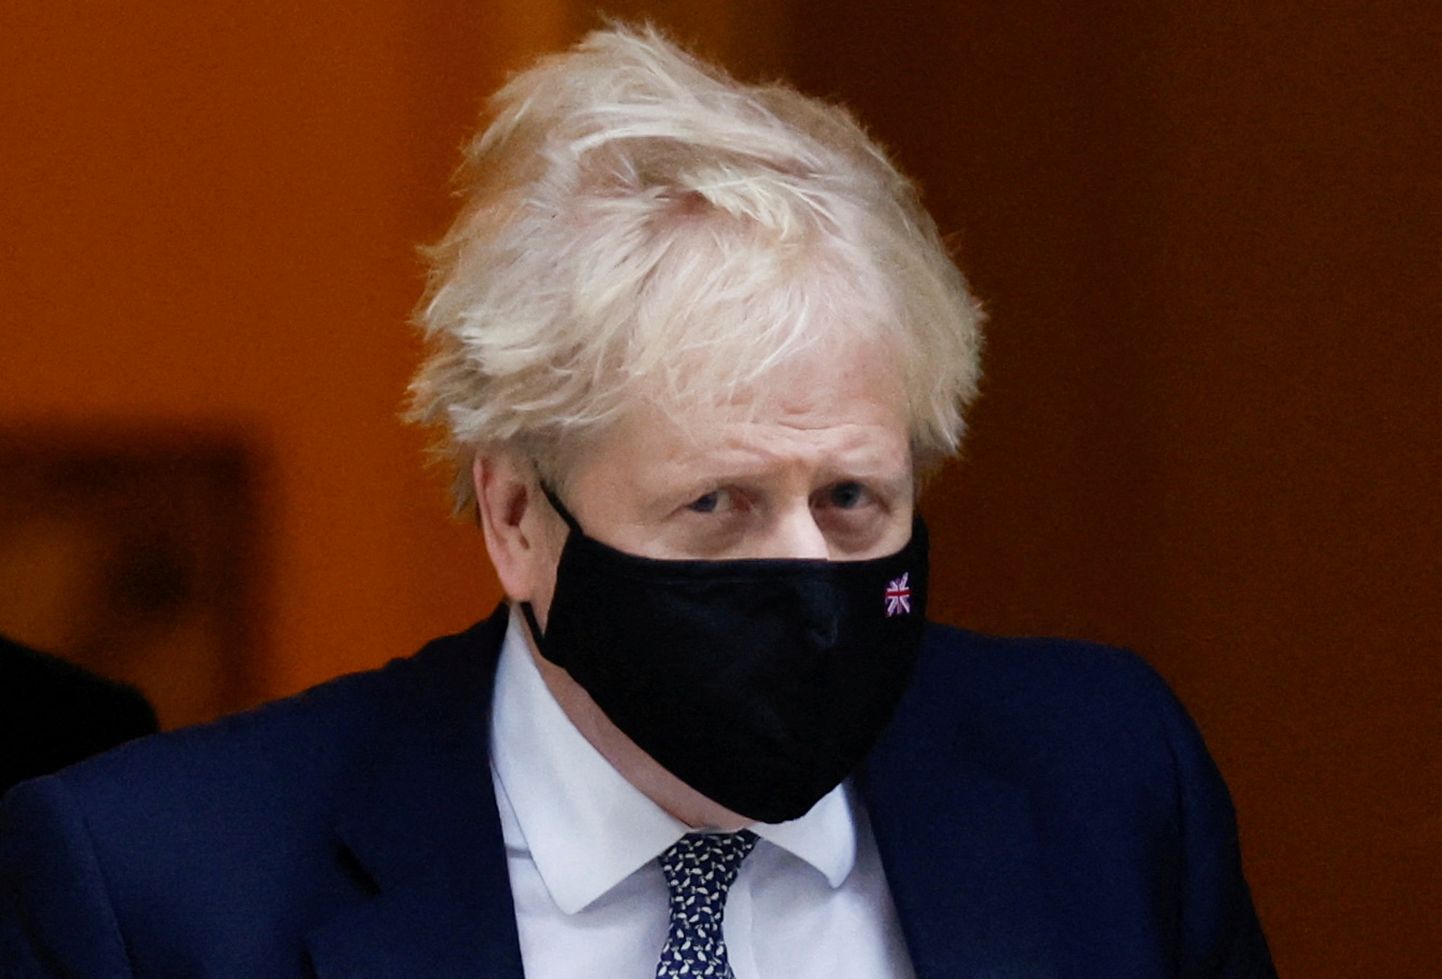 Briti peaminister Boris Johnson lahkumas 25. jaanuaril oma residentsist Londonis Downing Street 10